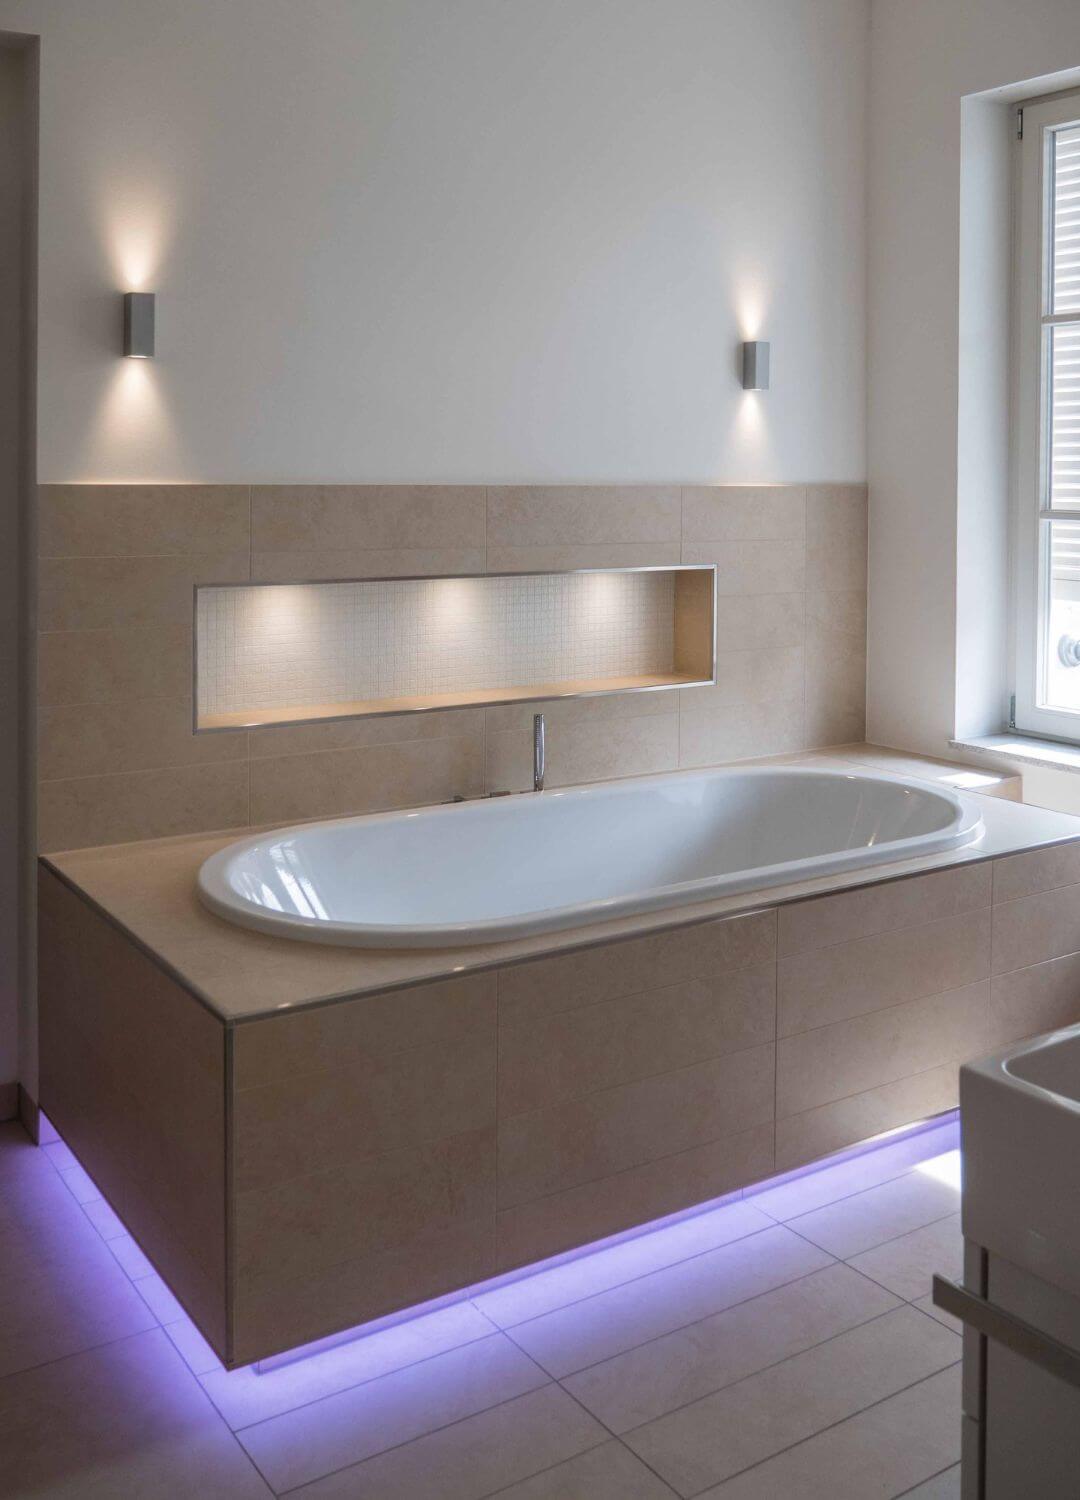 Akzentbeleuchtung mit Wandleuchten, Nischenbeleuchtung und indirekte farbige Beleuchtung an der Badewanne - Luxusbad